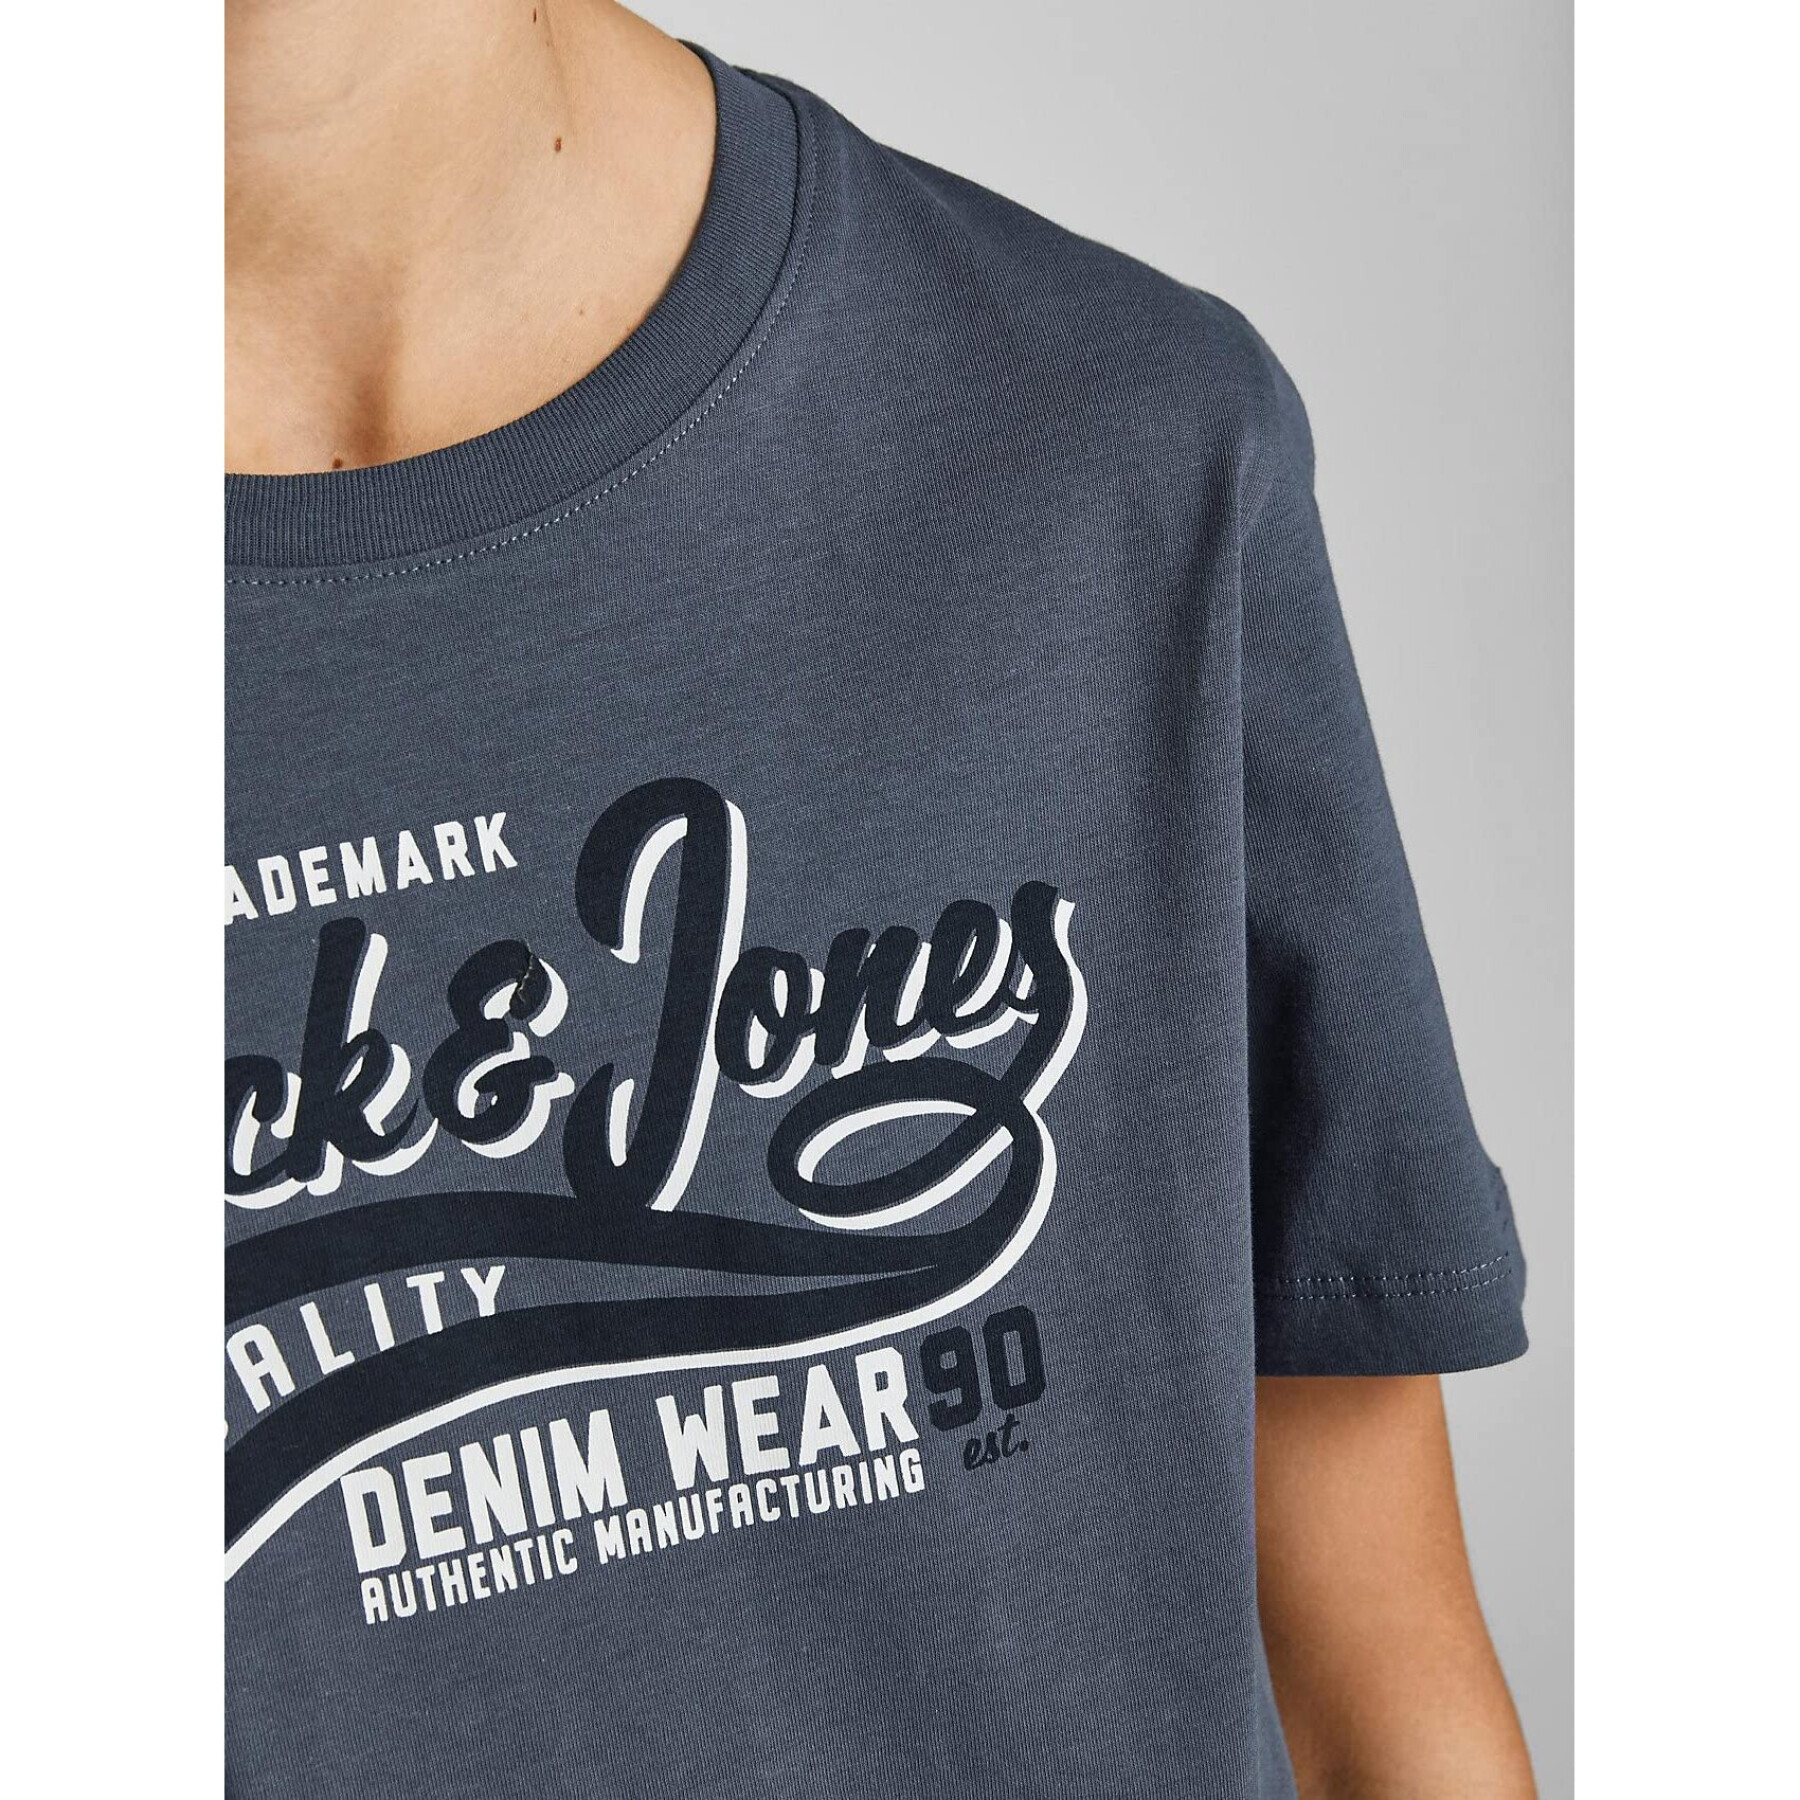 T-shirt för barn Jack & Jones Logo